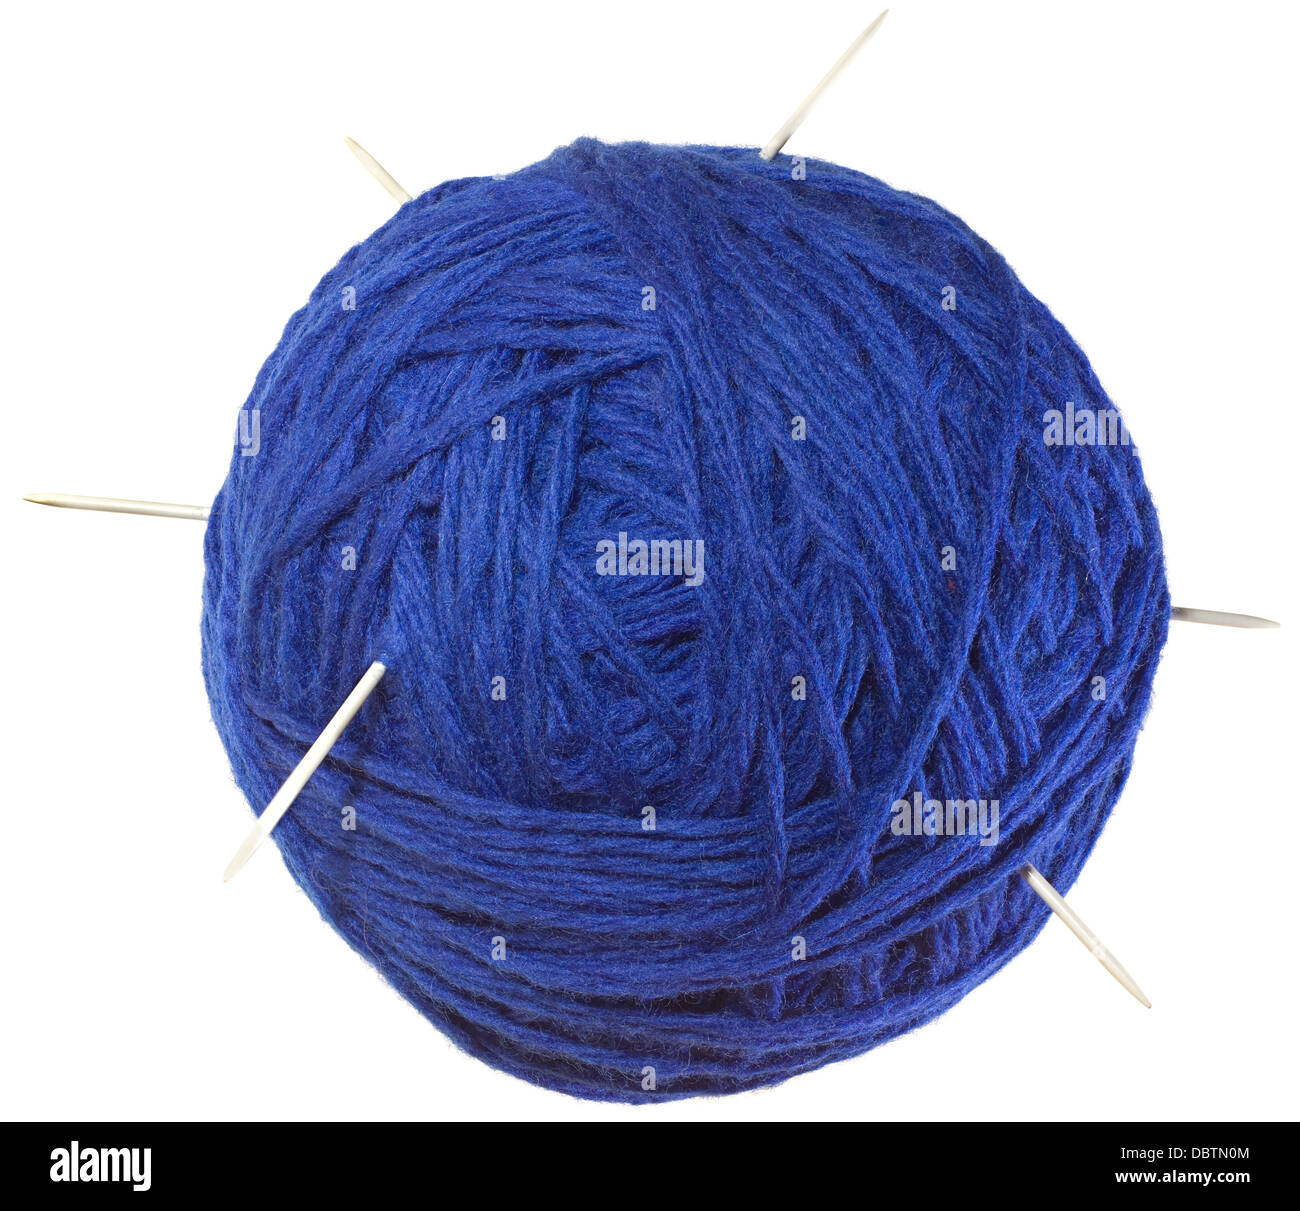 Sfera blu di lana con aghi isolati su sfondo bianco Foto Stock